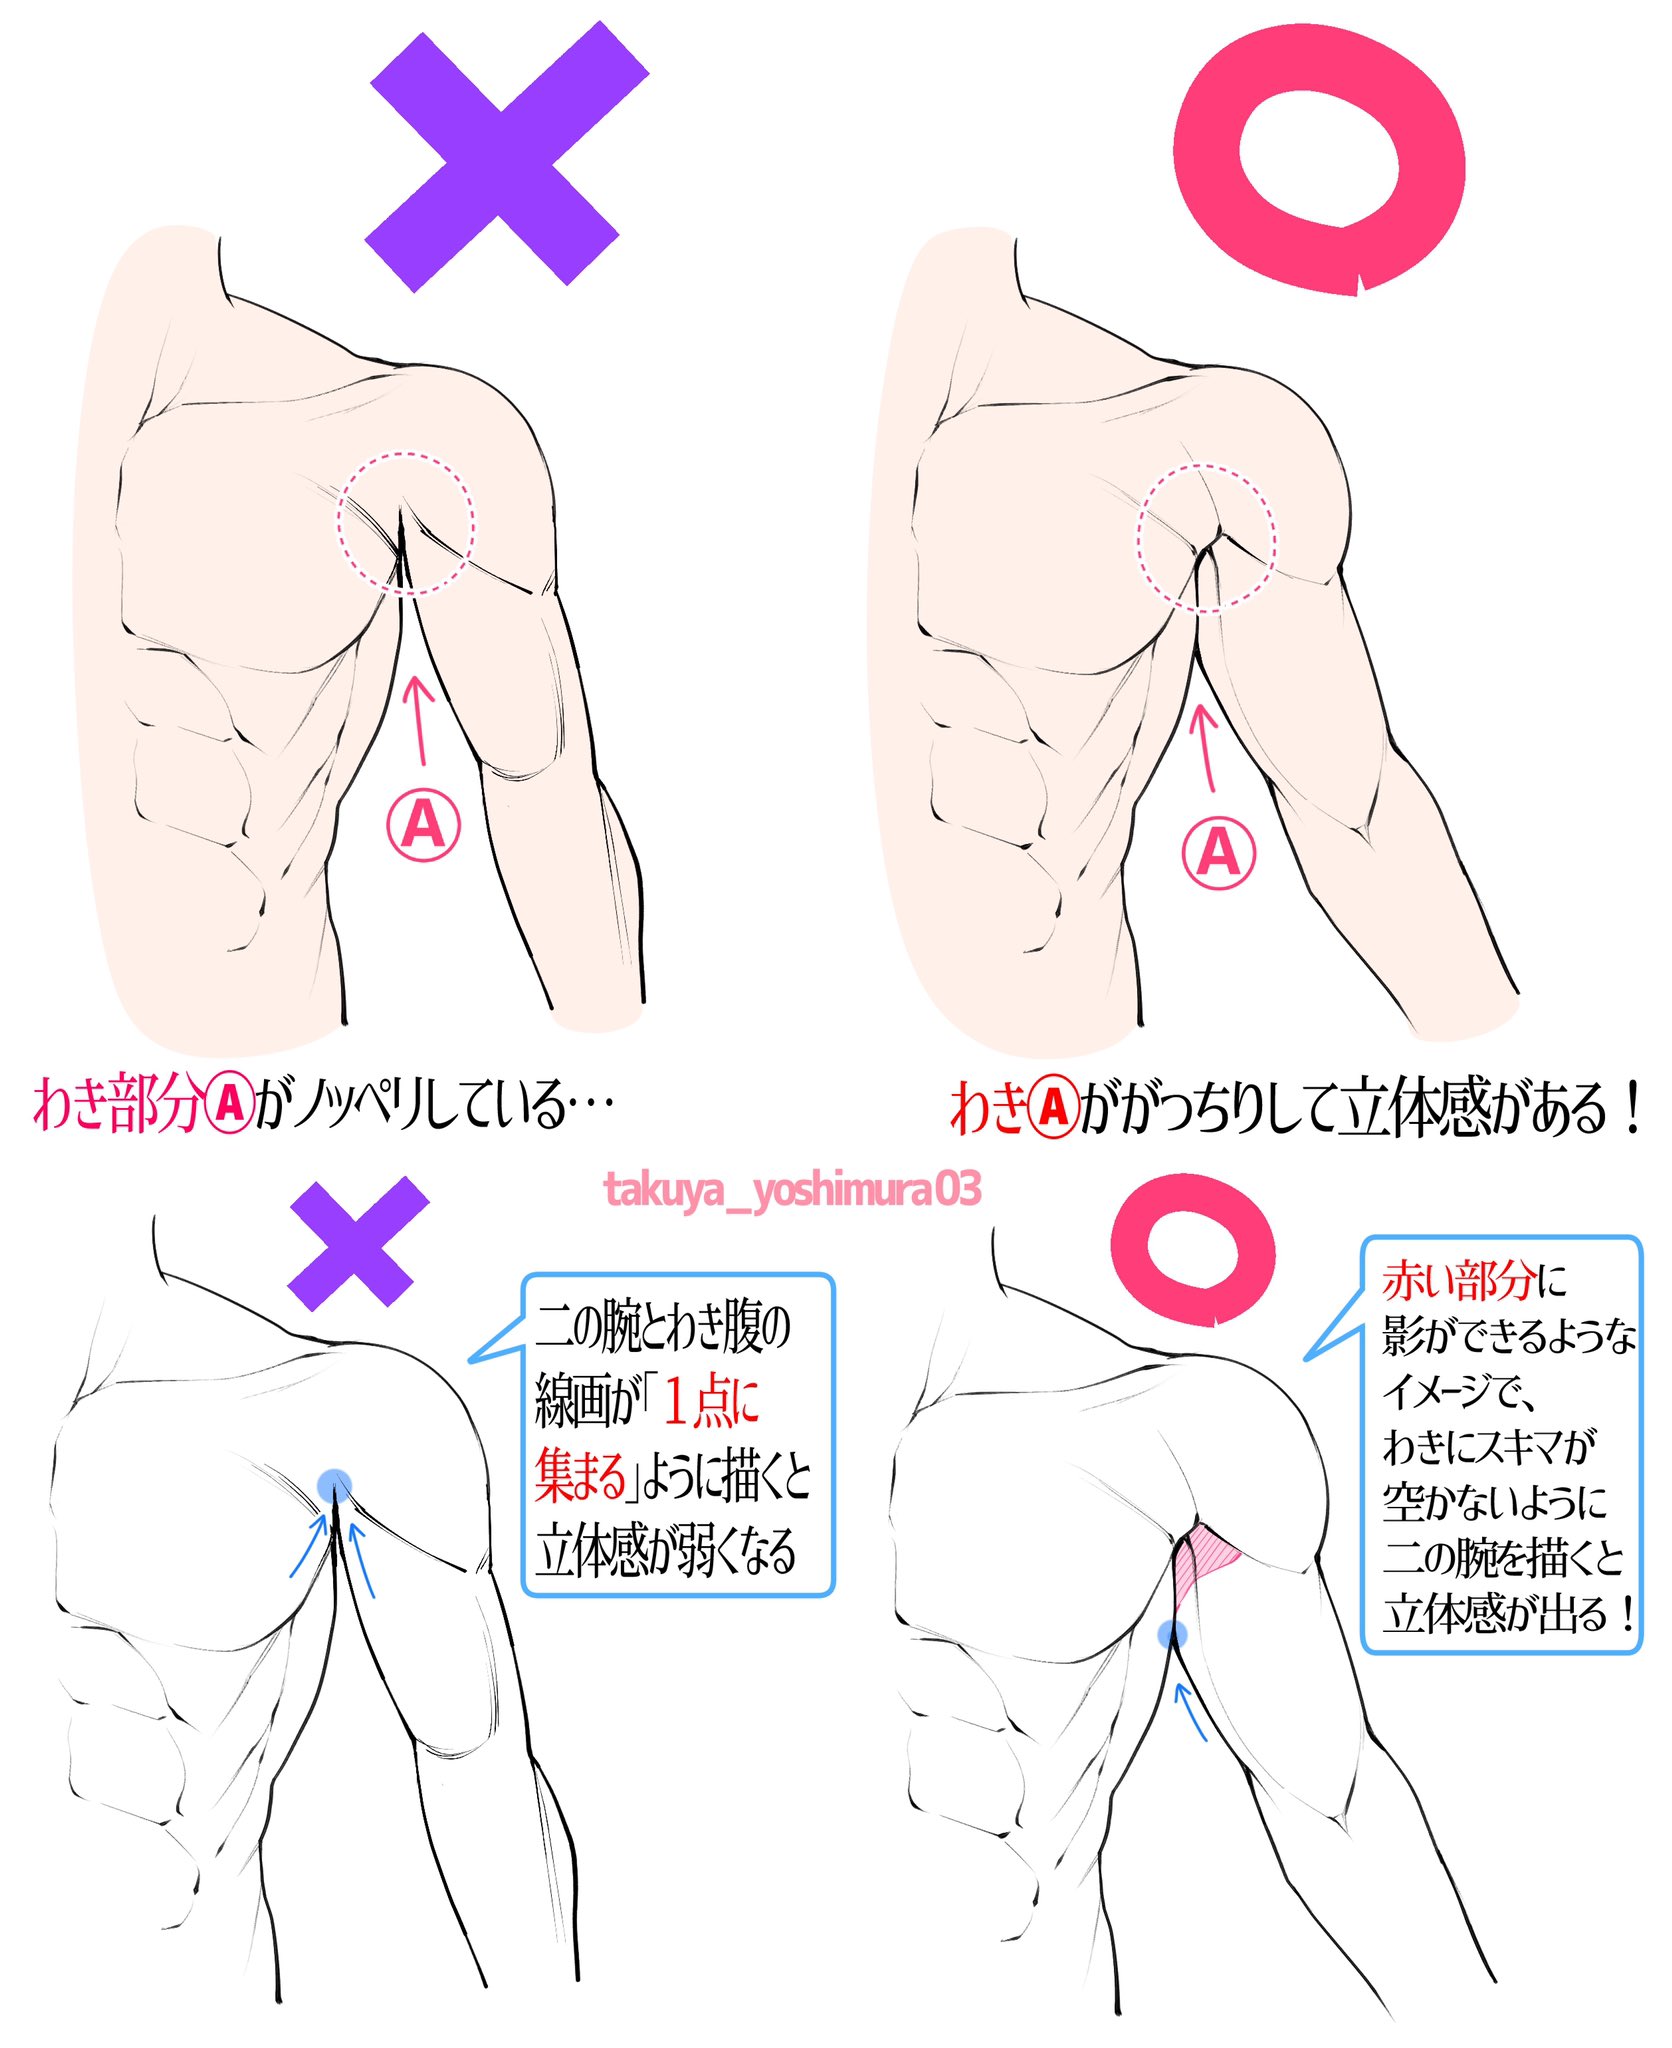 吉村拓也 イラスト講座 男性のワキの描き方 筋肉編 立体感が無くなってしまう例 立体感がかなりアップする例